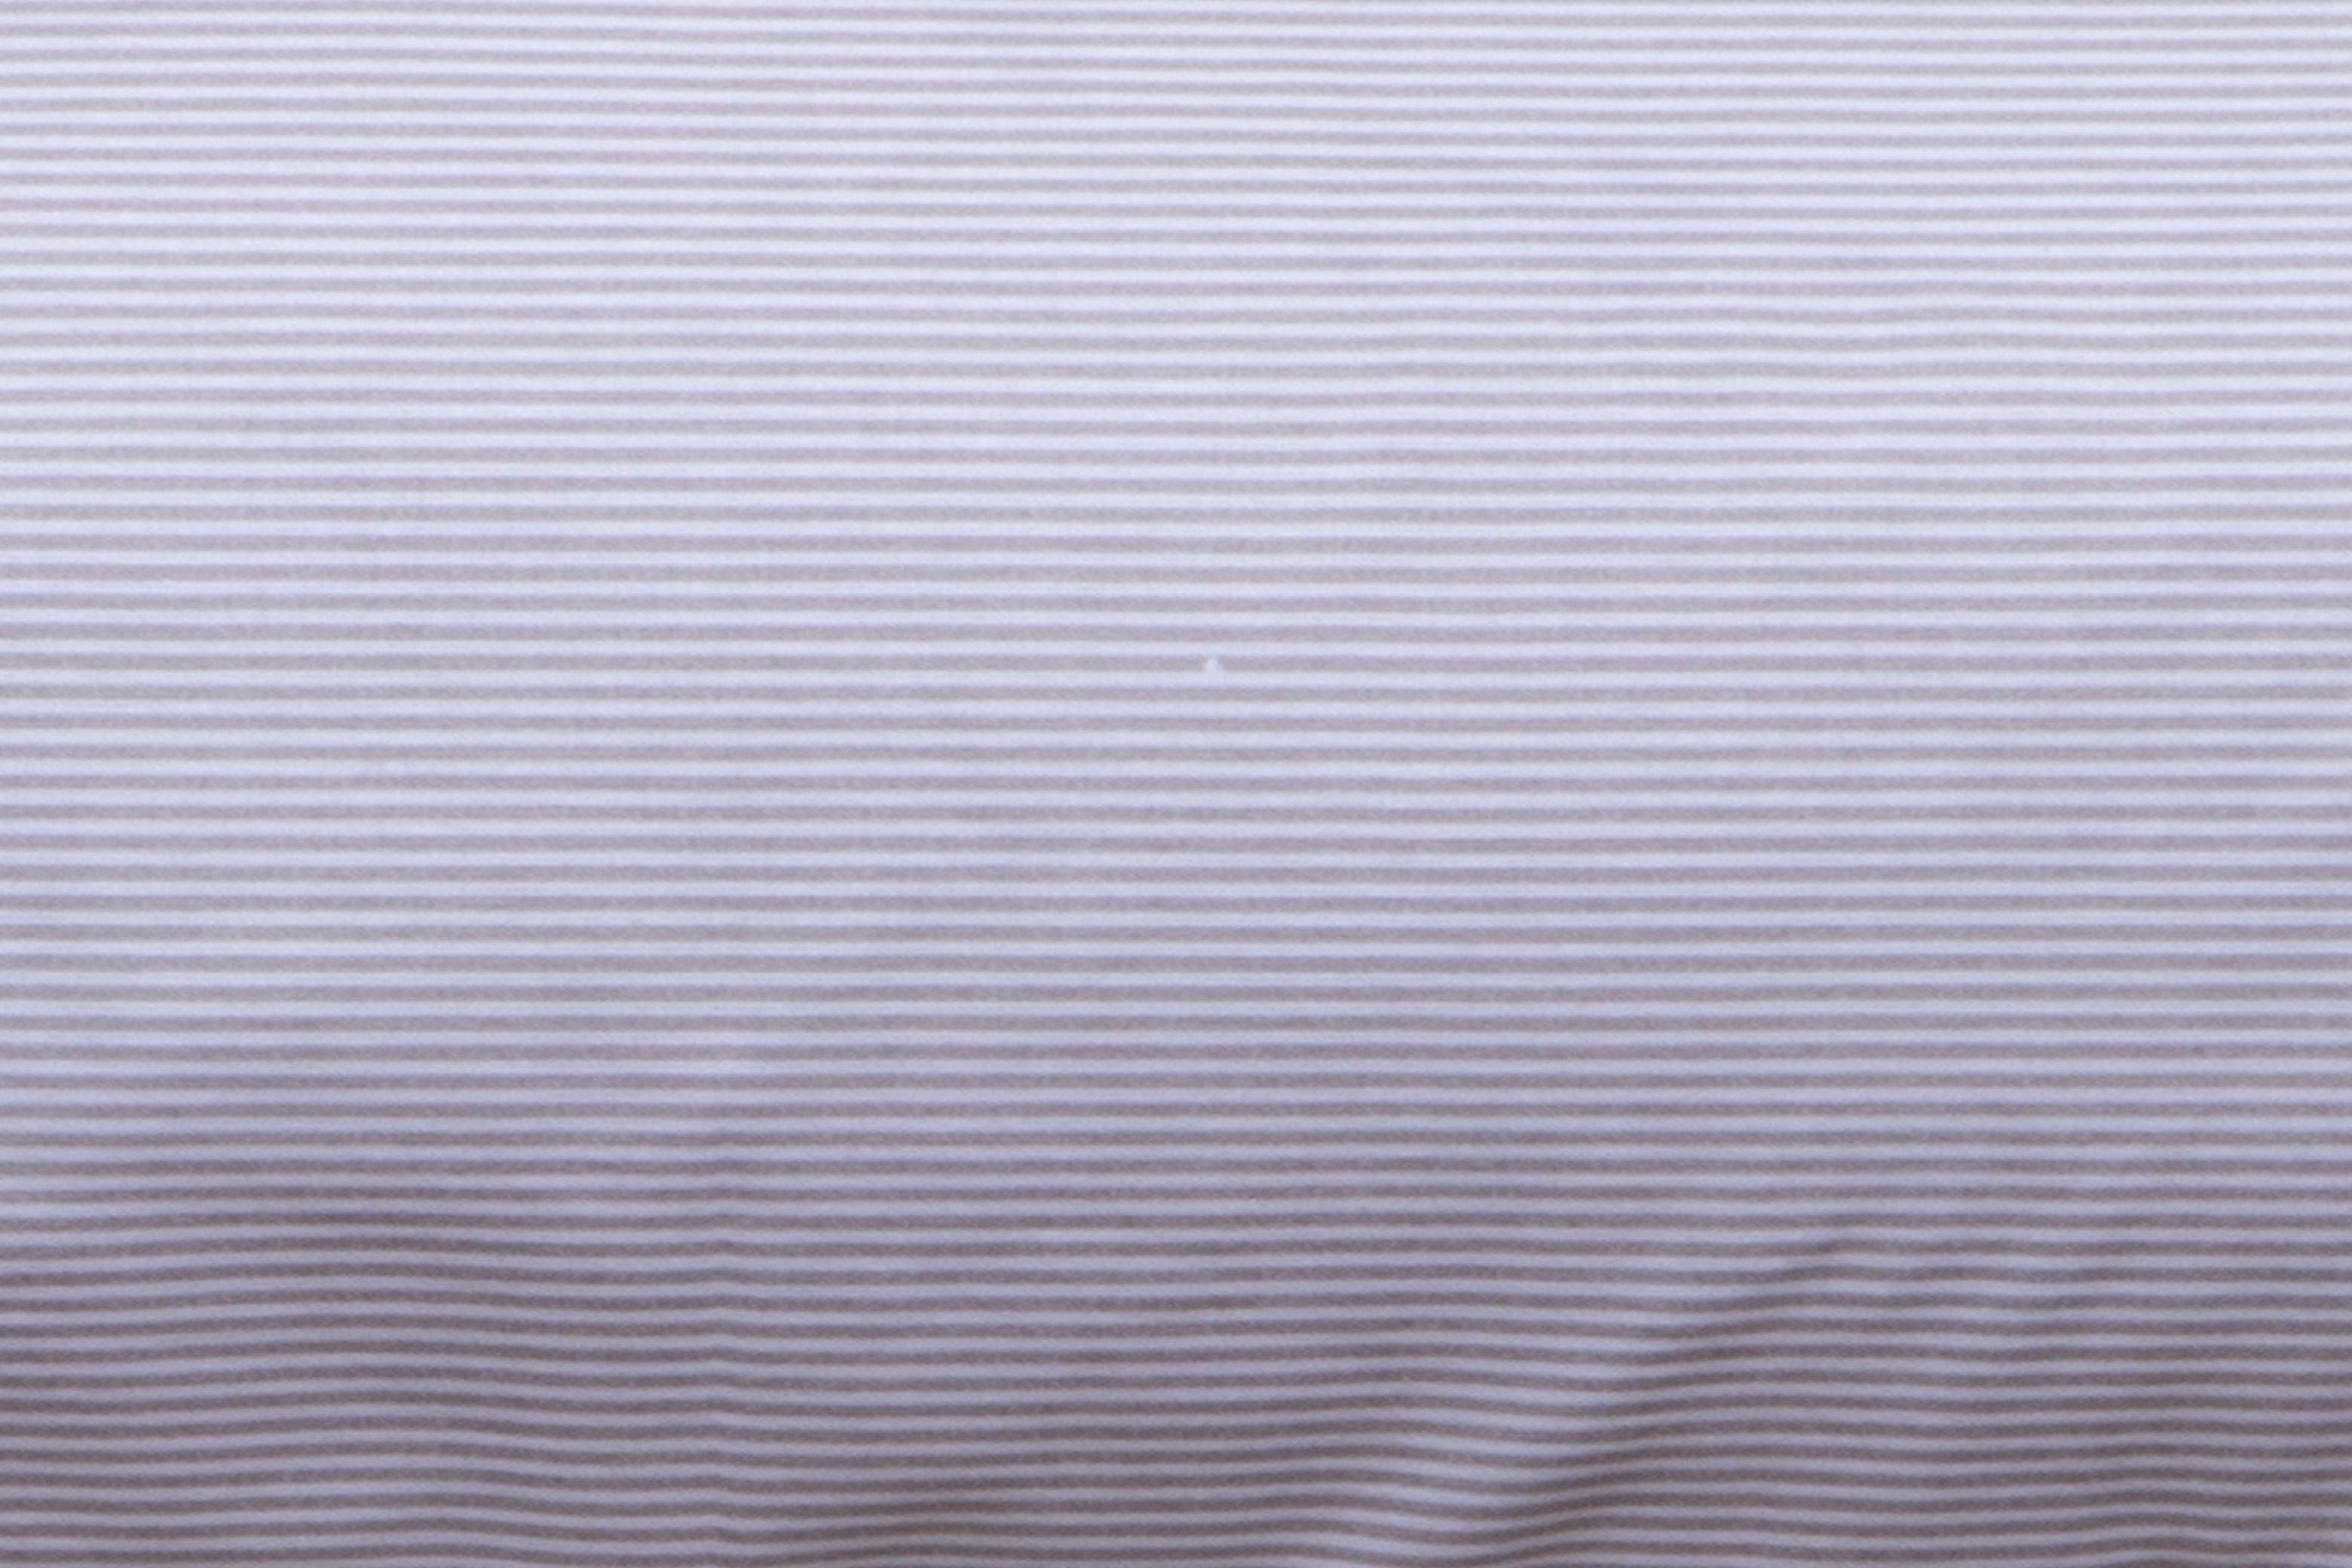 Completo letto lenzuola federe letto stampa fantasia 100% cotone Made in Italy RIGHE TORTORA - SmartDecoHome